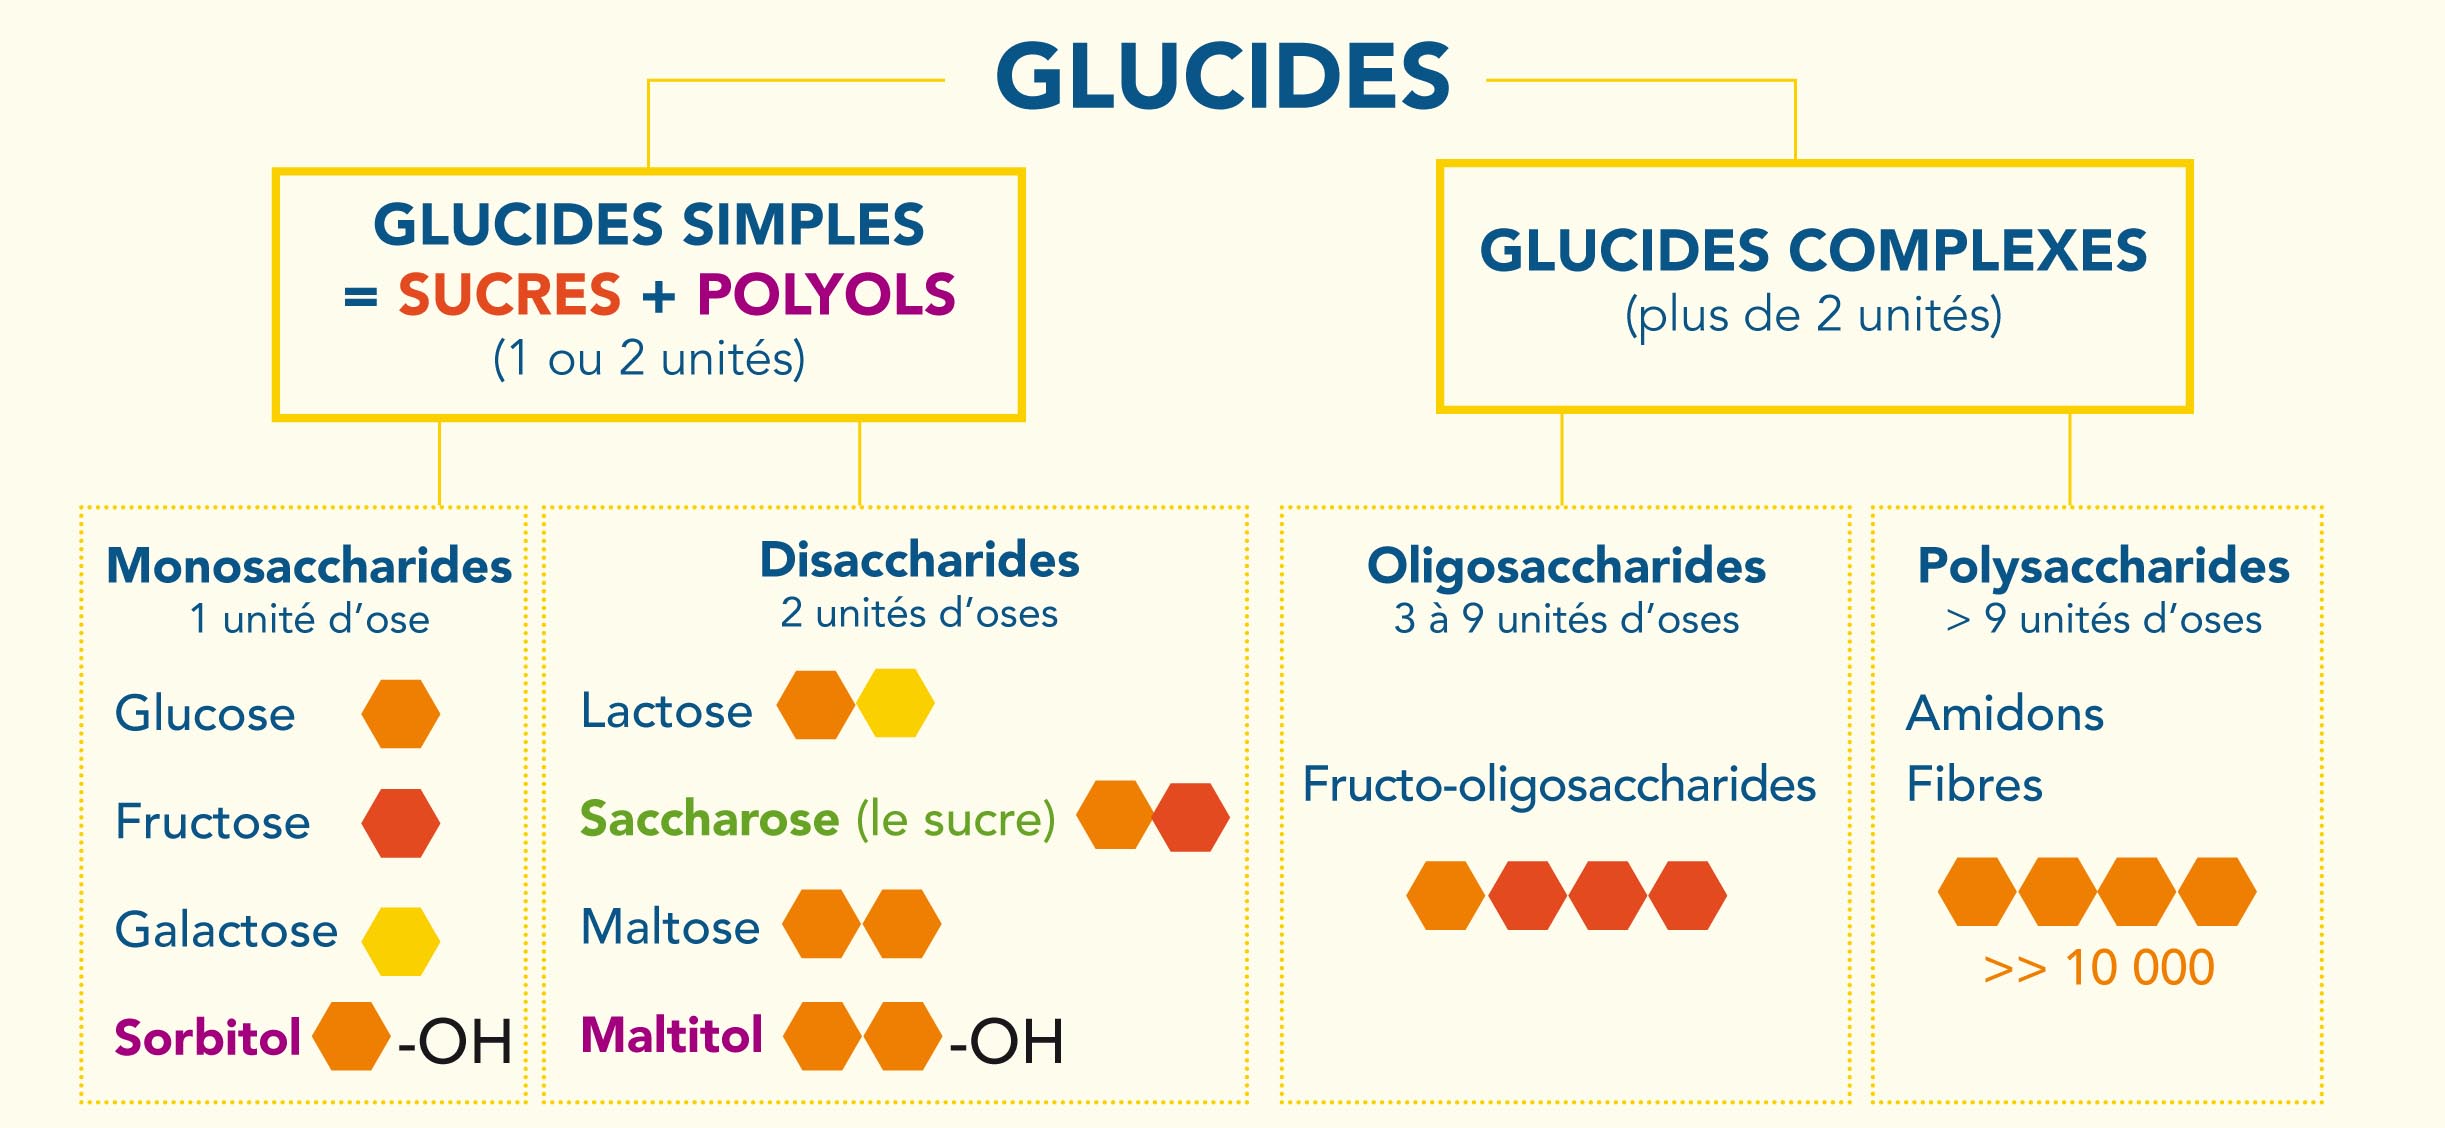 classification-des-glucides-selon-leur-structure